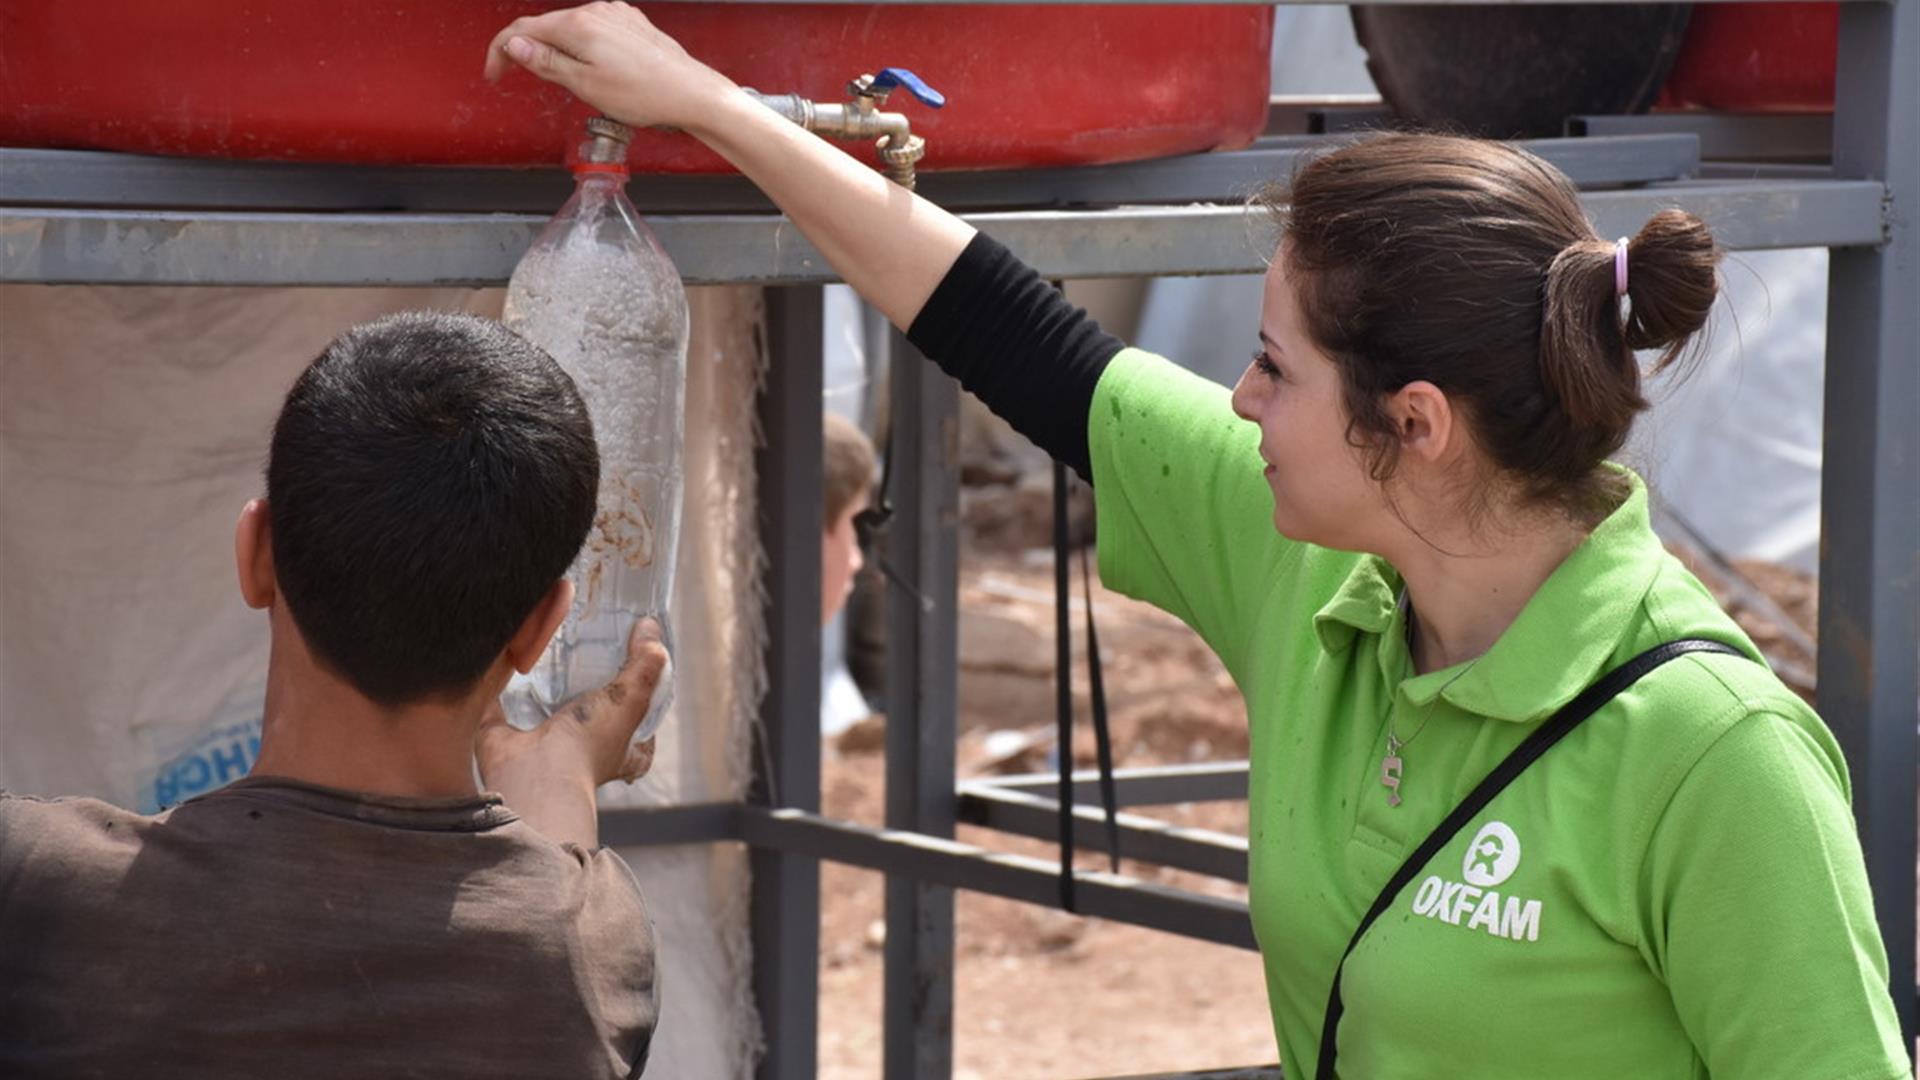 Campo Profughi Di Herjalleh A Sud Di Damasco Oxfam Al Lavoro Per Portare Acqua Pulita A 14 Mila Sfollati Della Ghouta Orientale Credit Dania Kareh Oxfam 